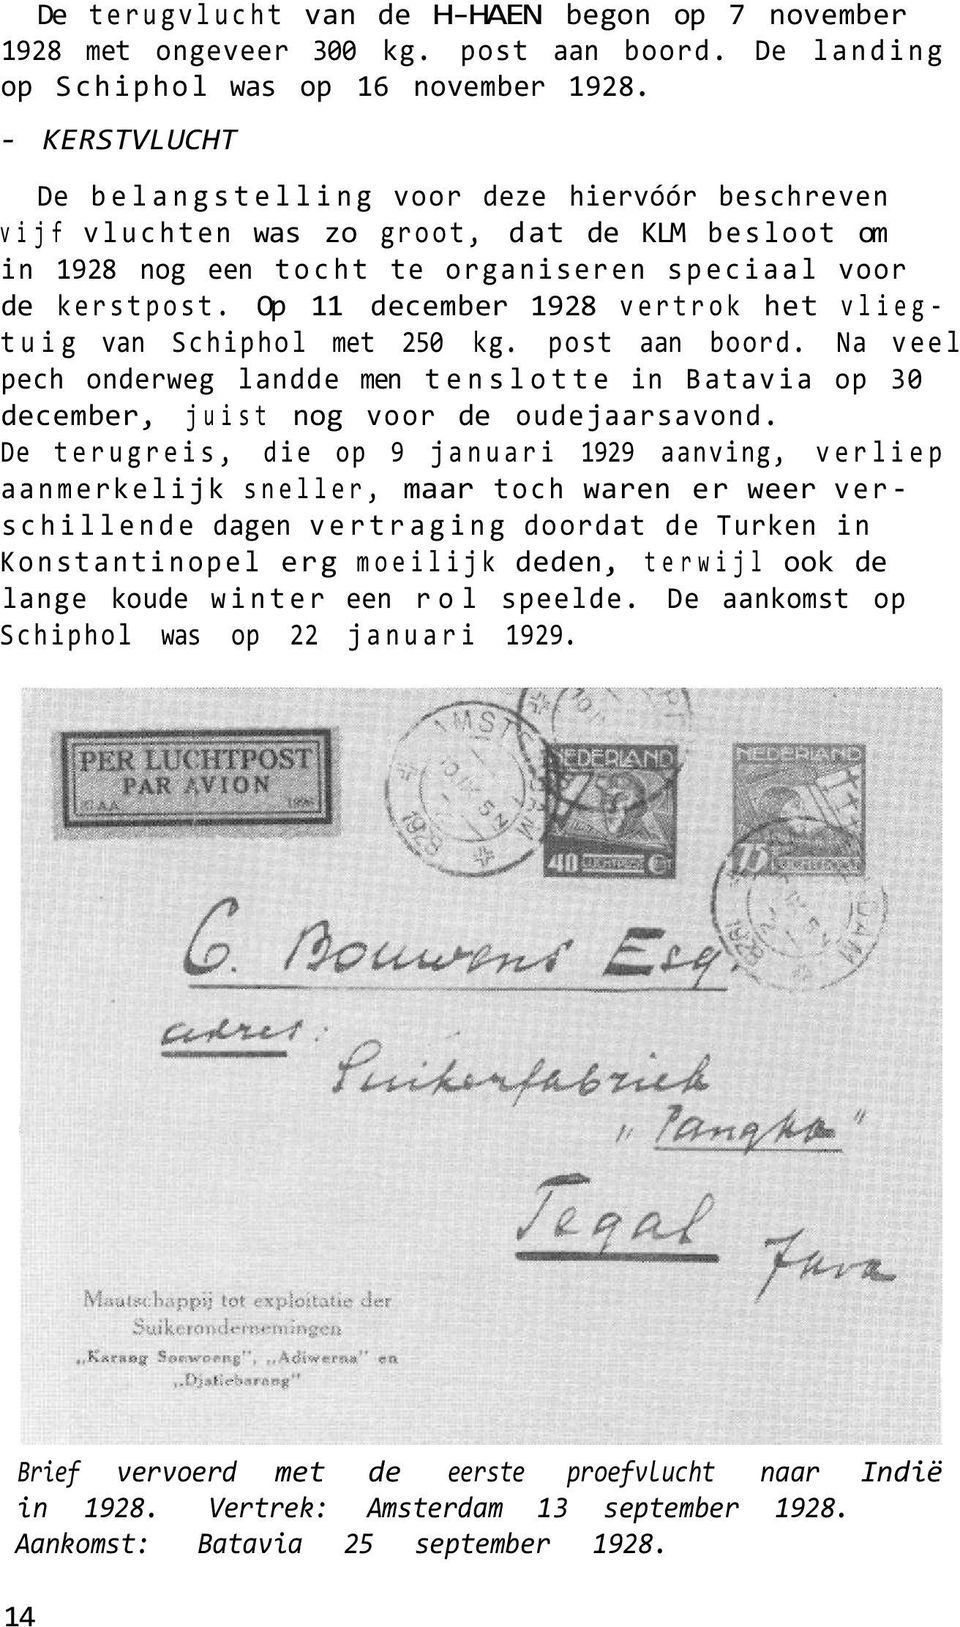 Op 11 december 1928 vertrok het vliegtuig van Schiphol met 250 kg. post aan boord. Na veel pech onderweg landde men tenslotte in Batavia op 30 december, juist nog voor de oudejaarsavond.